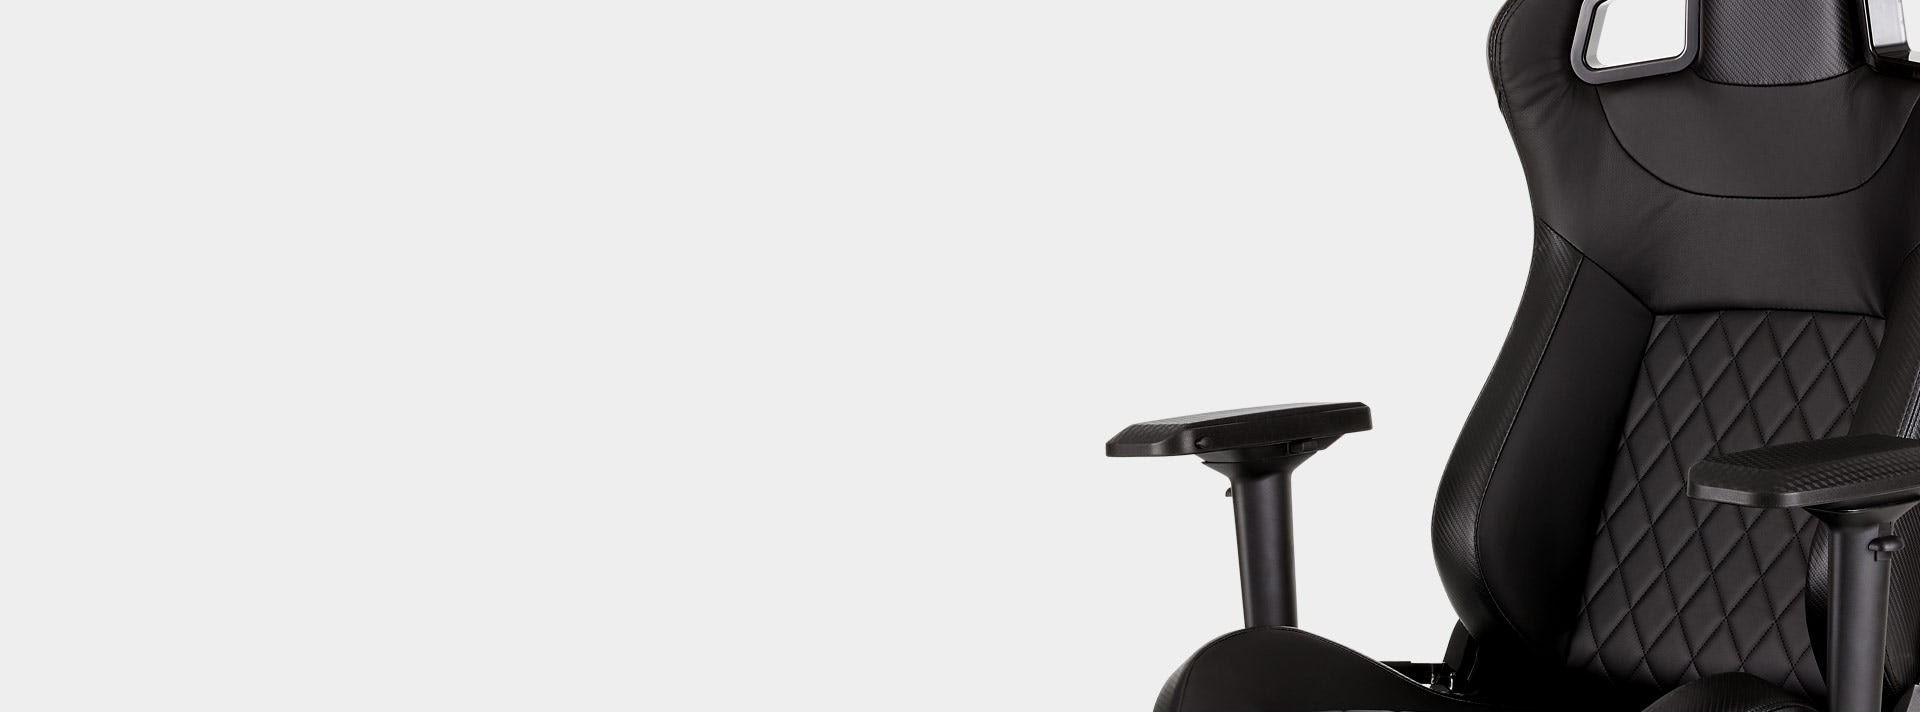 Bon plan] Chaise gaming Corsair T1 RACE 2018 à 329,90 € livrée avec 230,93  € reversés ! - Hardware & Co